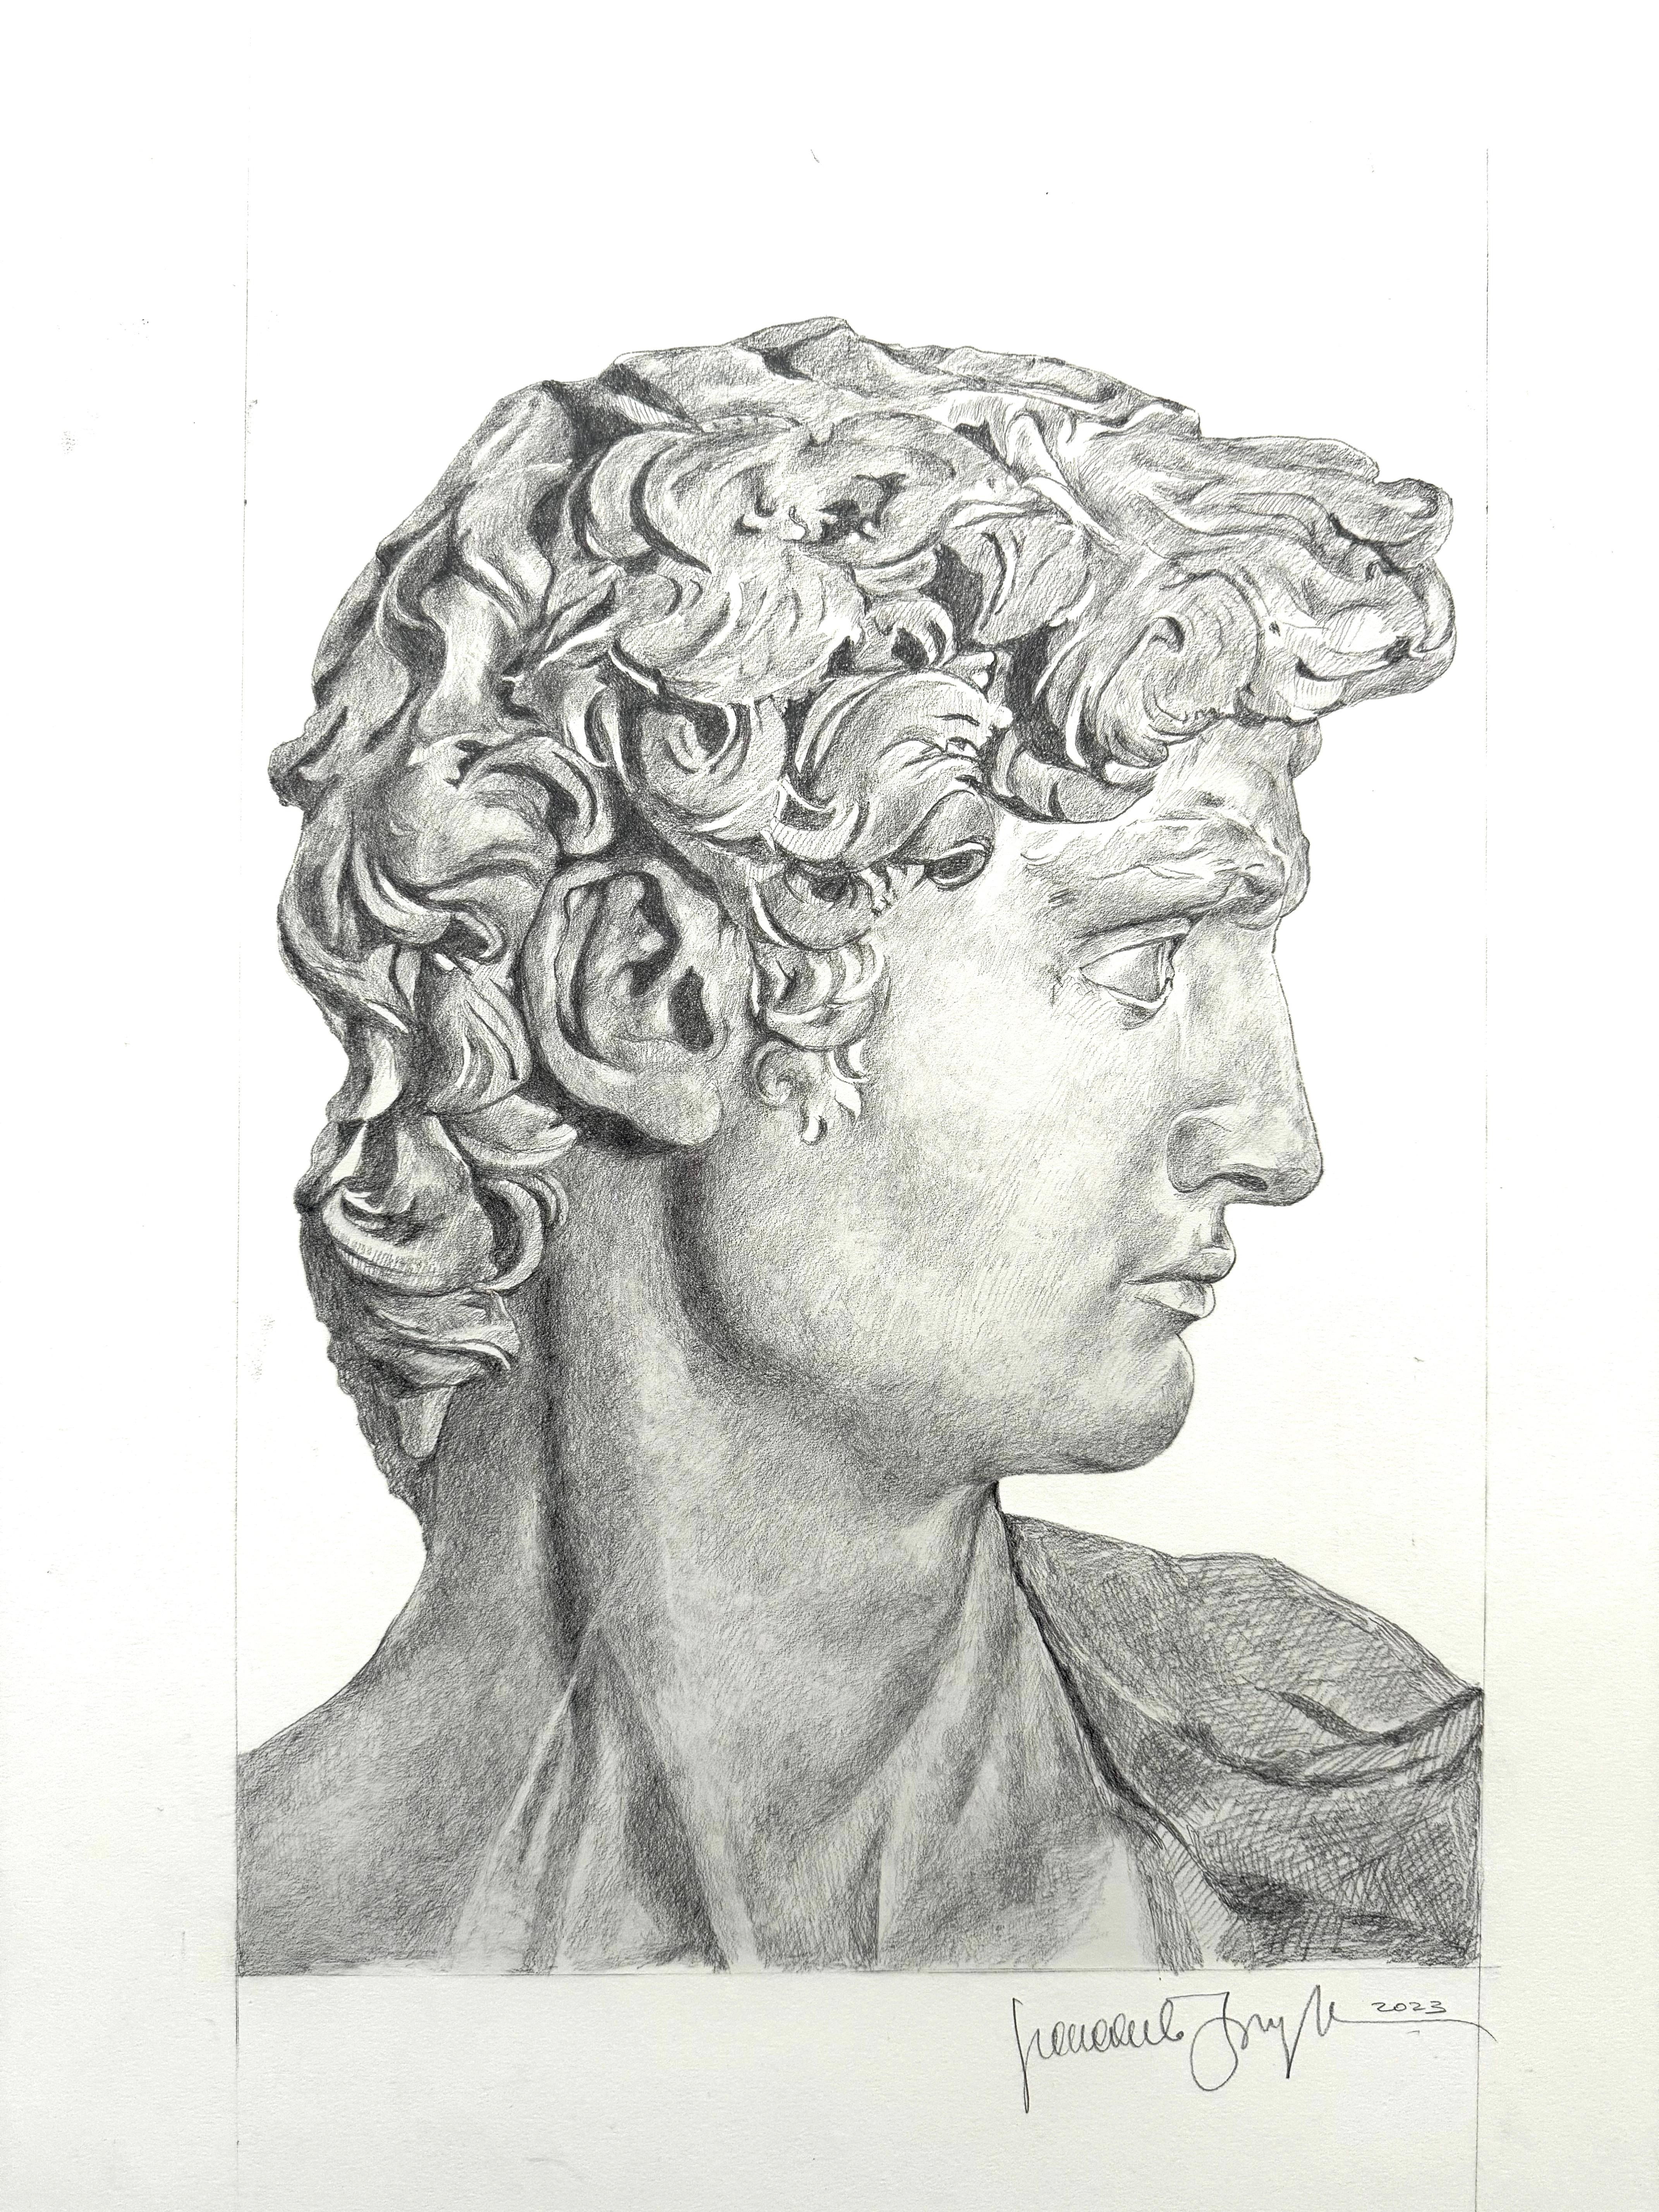 Unglaubliche Skizze von Michelangelos David – Art von Giancarlo Impiglia